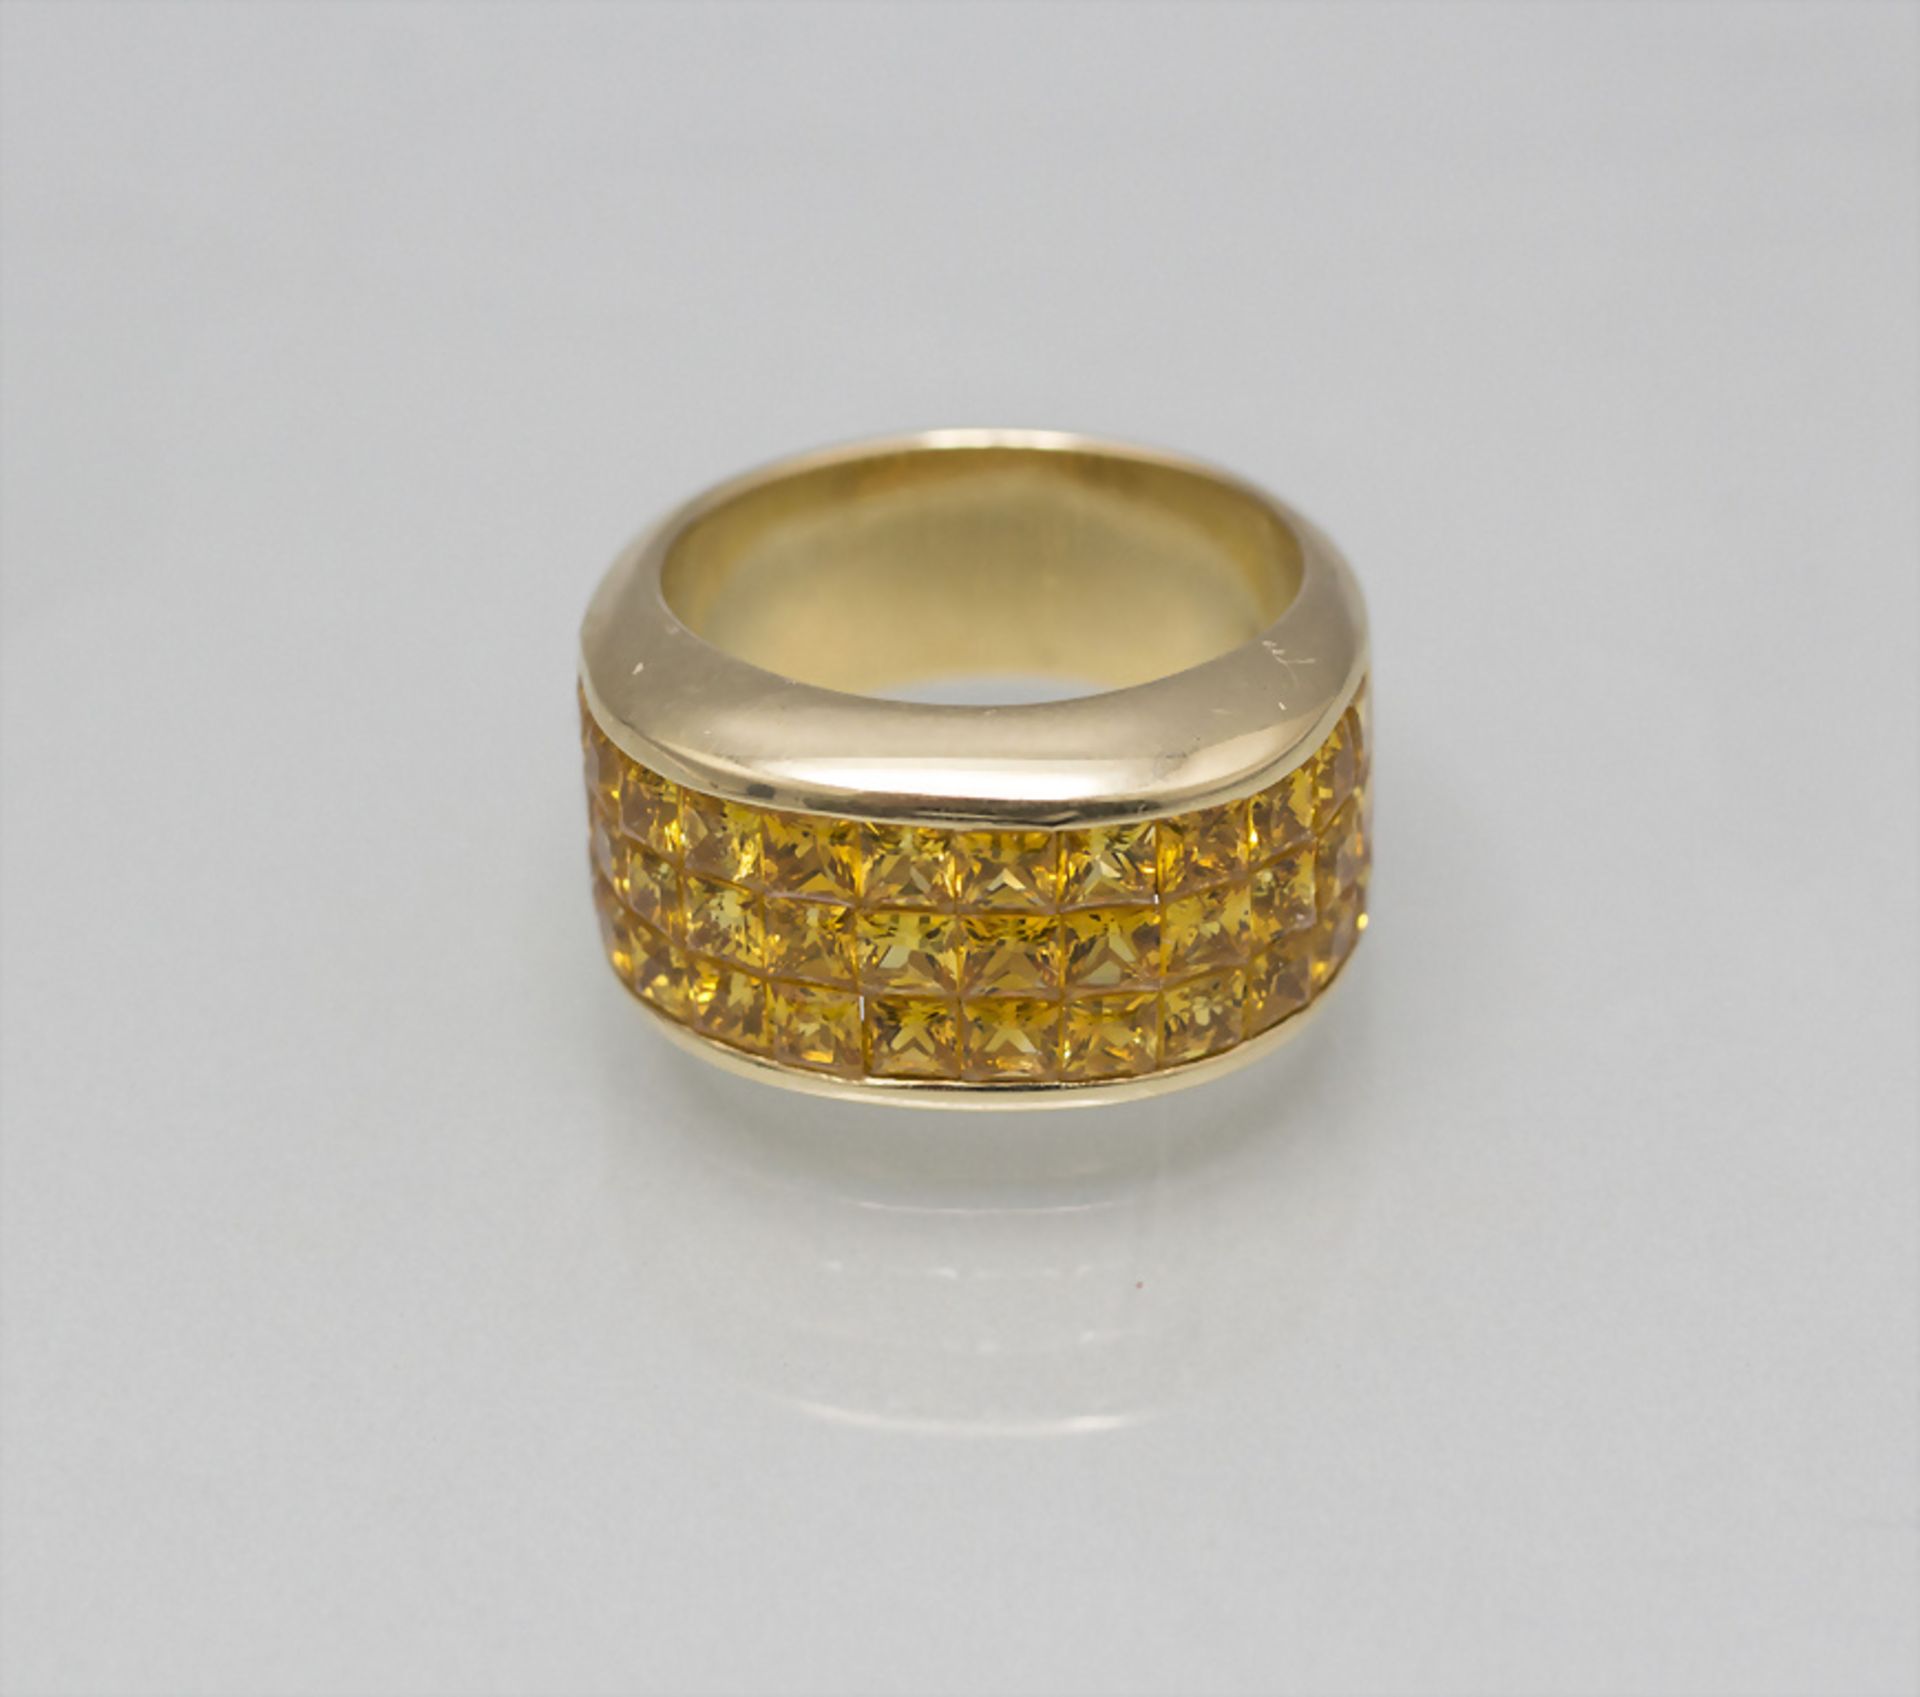 Damenring mit gelben Saphiren / A ladies 18 ct gold ring with yellow sapphires